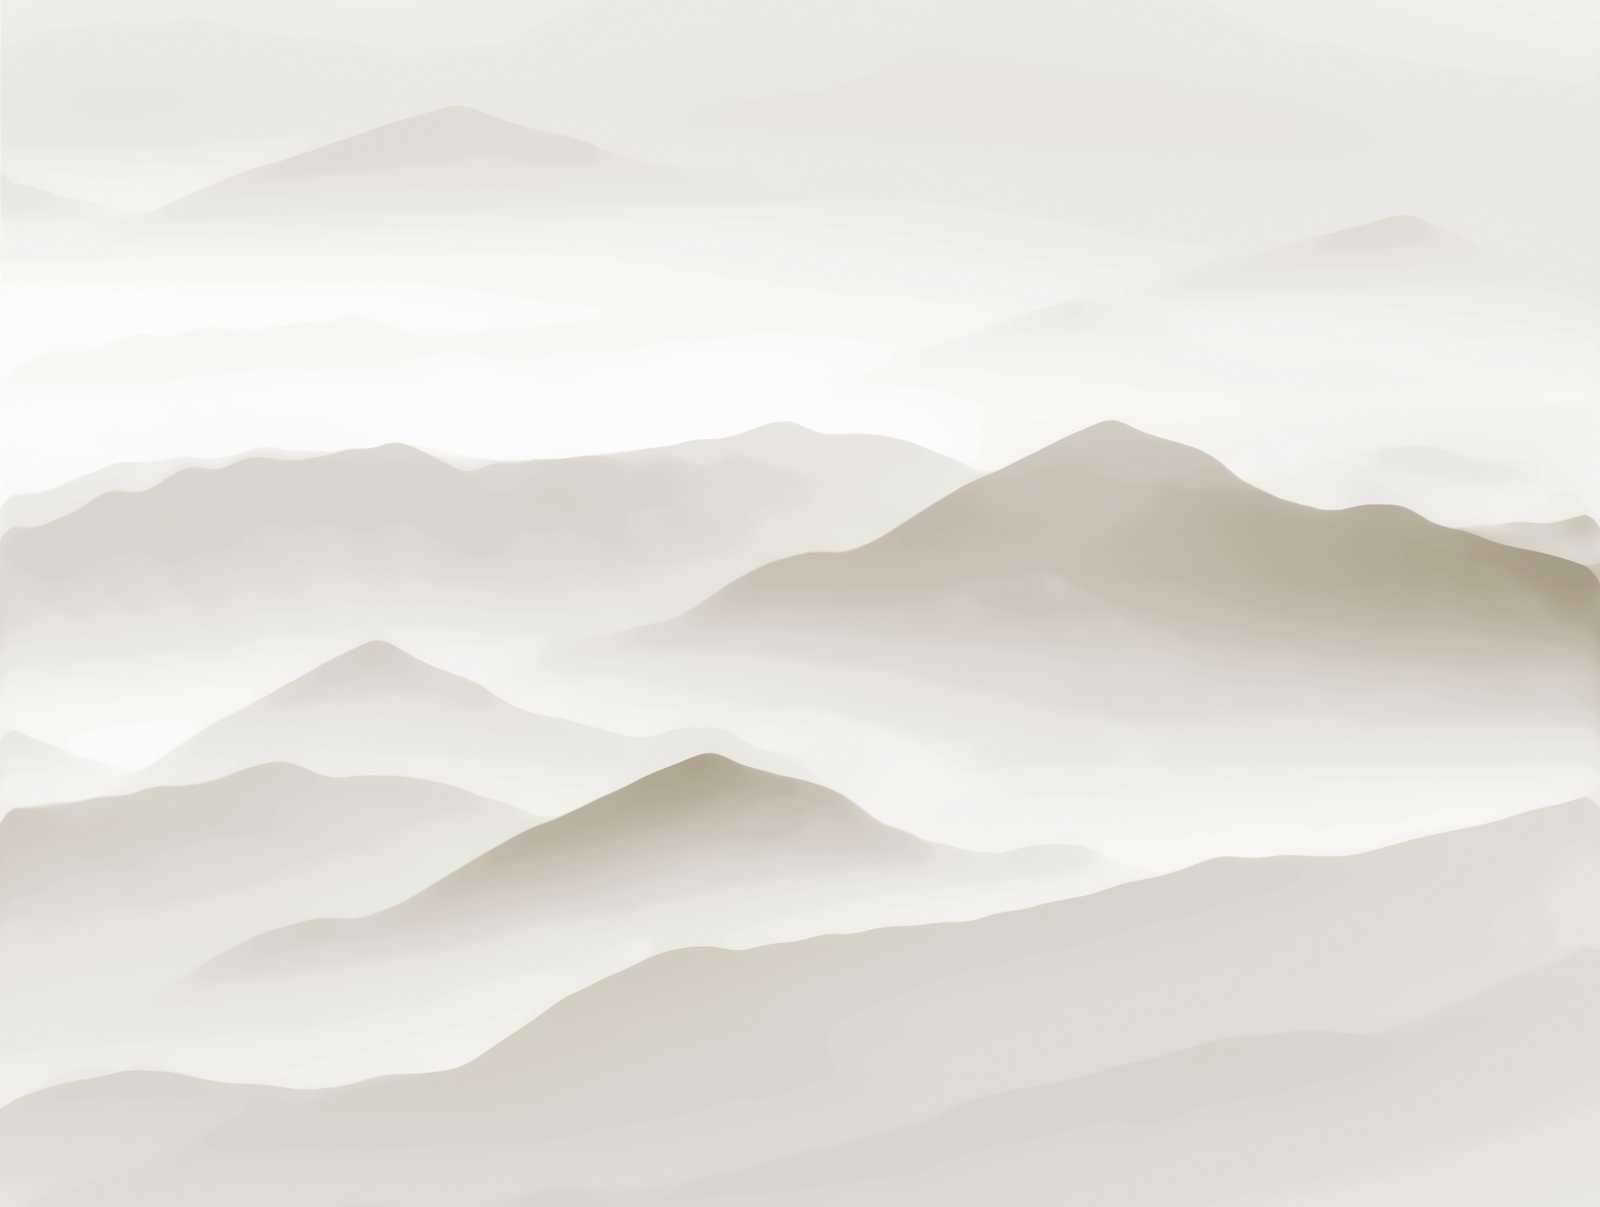             behang nieuwigheid - motief behang greige met duinen design
        